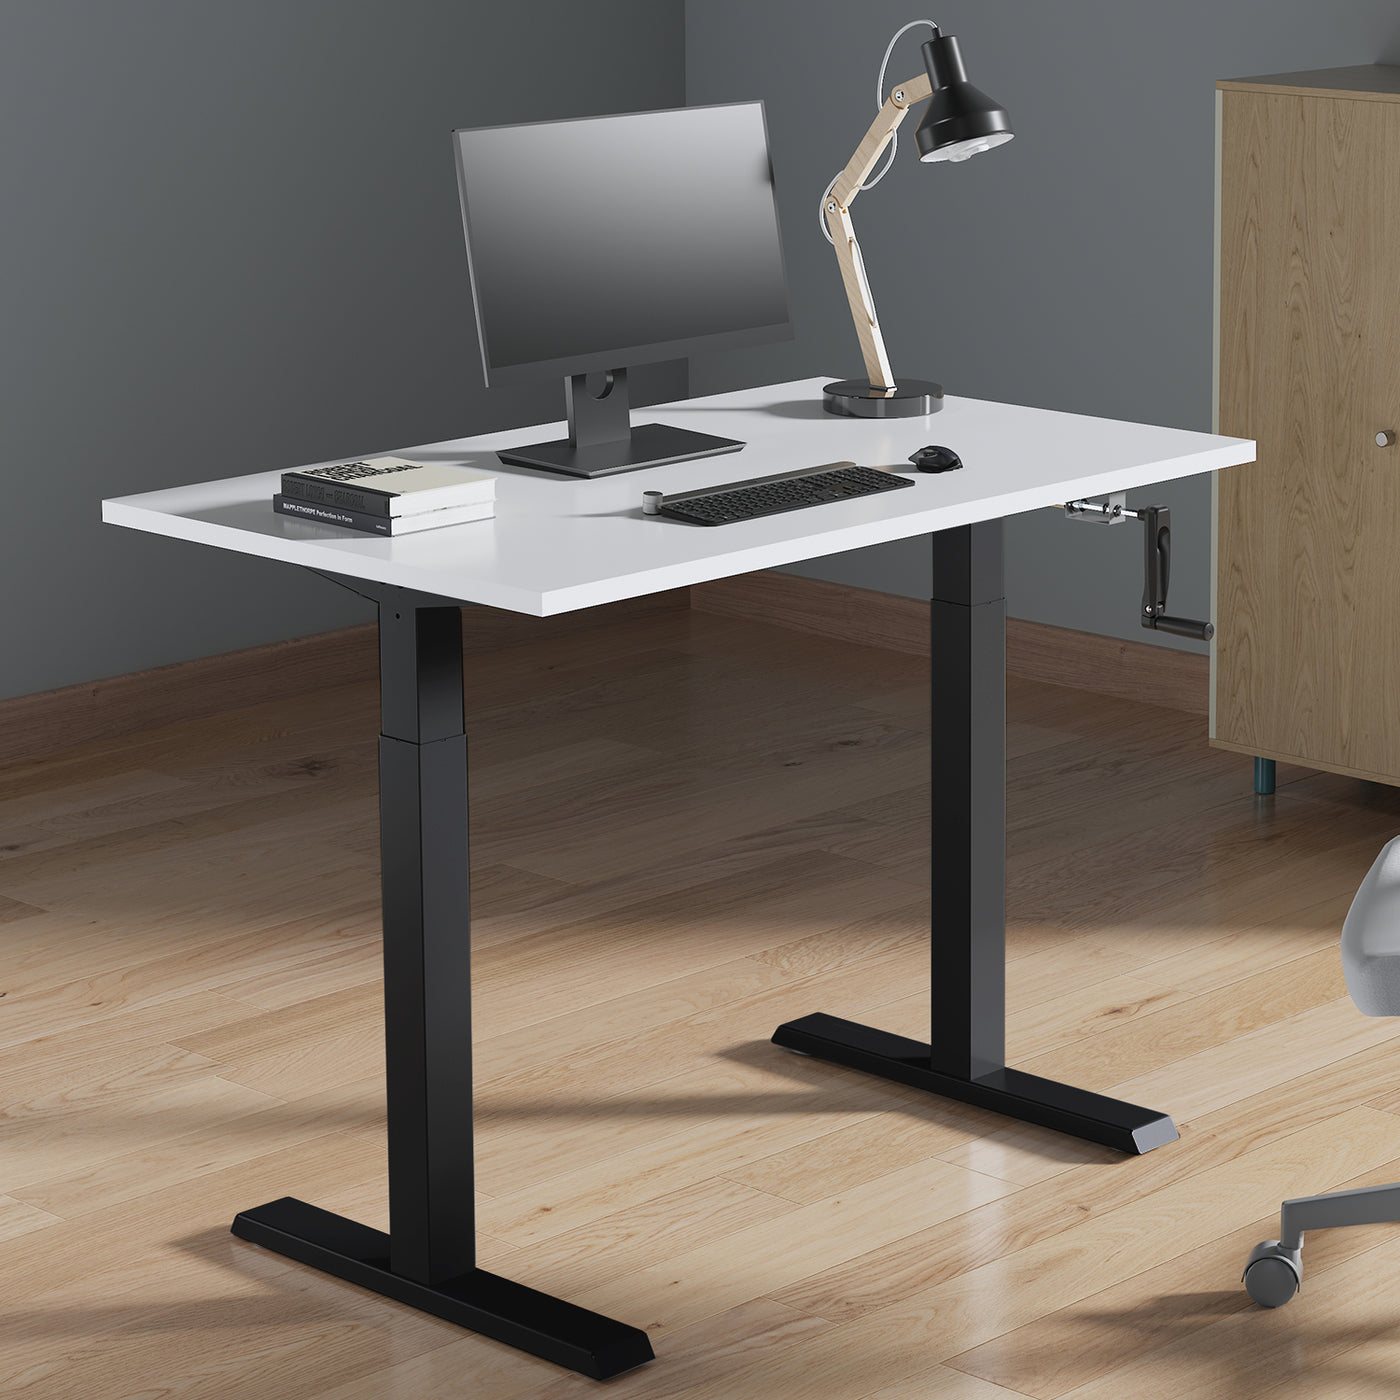 Ergo Office ER-402B Manuell höhenverstellbarer Schreibtisch Tischgestell ohne Platte für Steh- und Sitzarbeiten schwarz